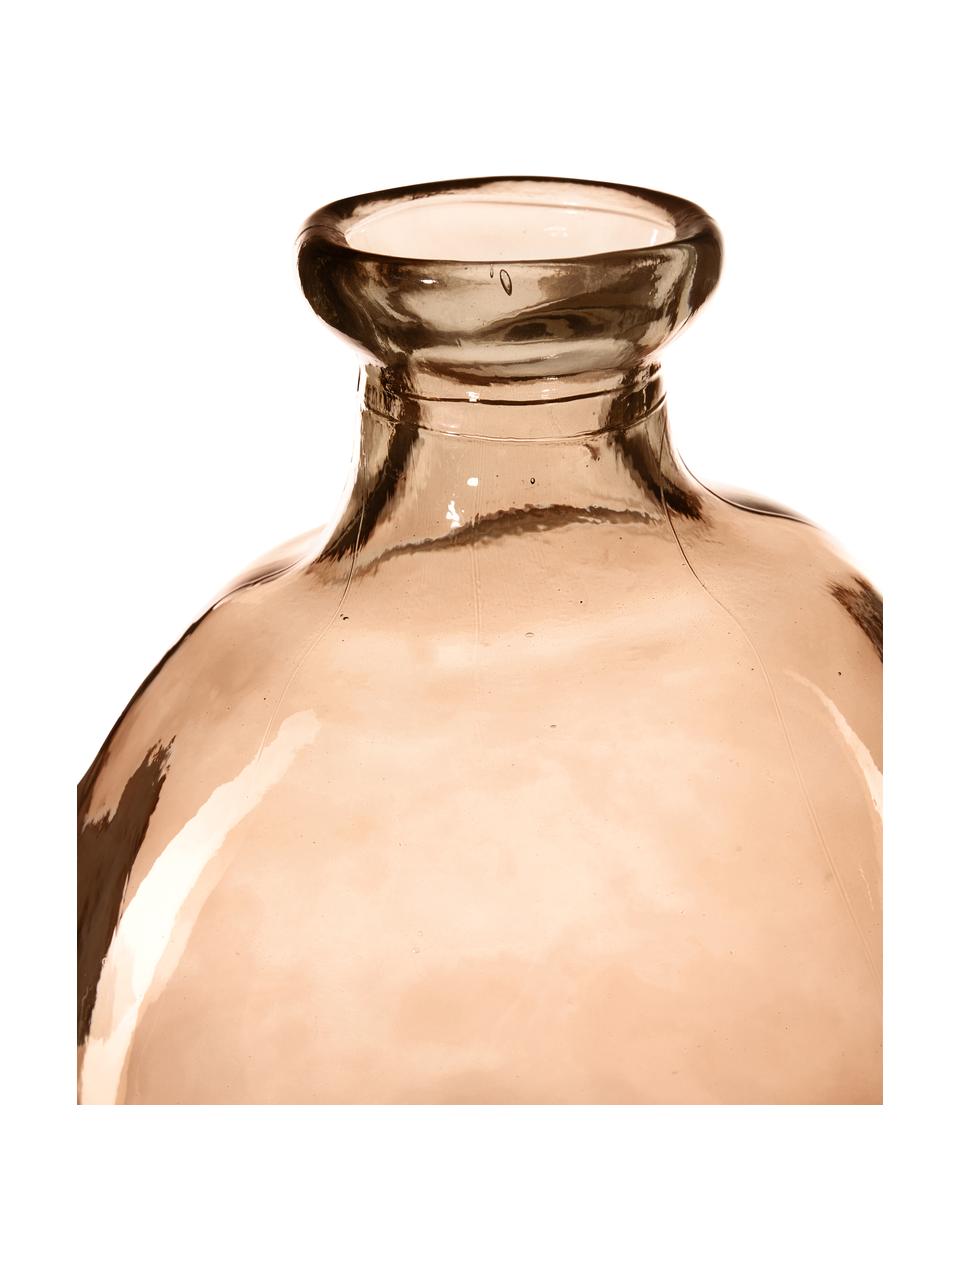 Flaschenvase Dina, Recyceltes Glas, GRS-zertifiziert, Hellbraun, Ø 34 x H 73 cm